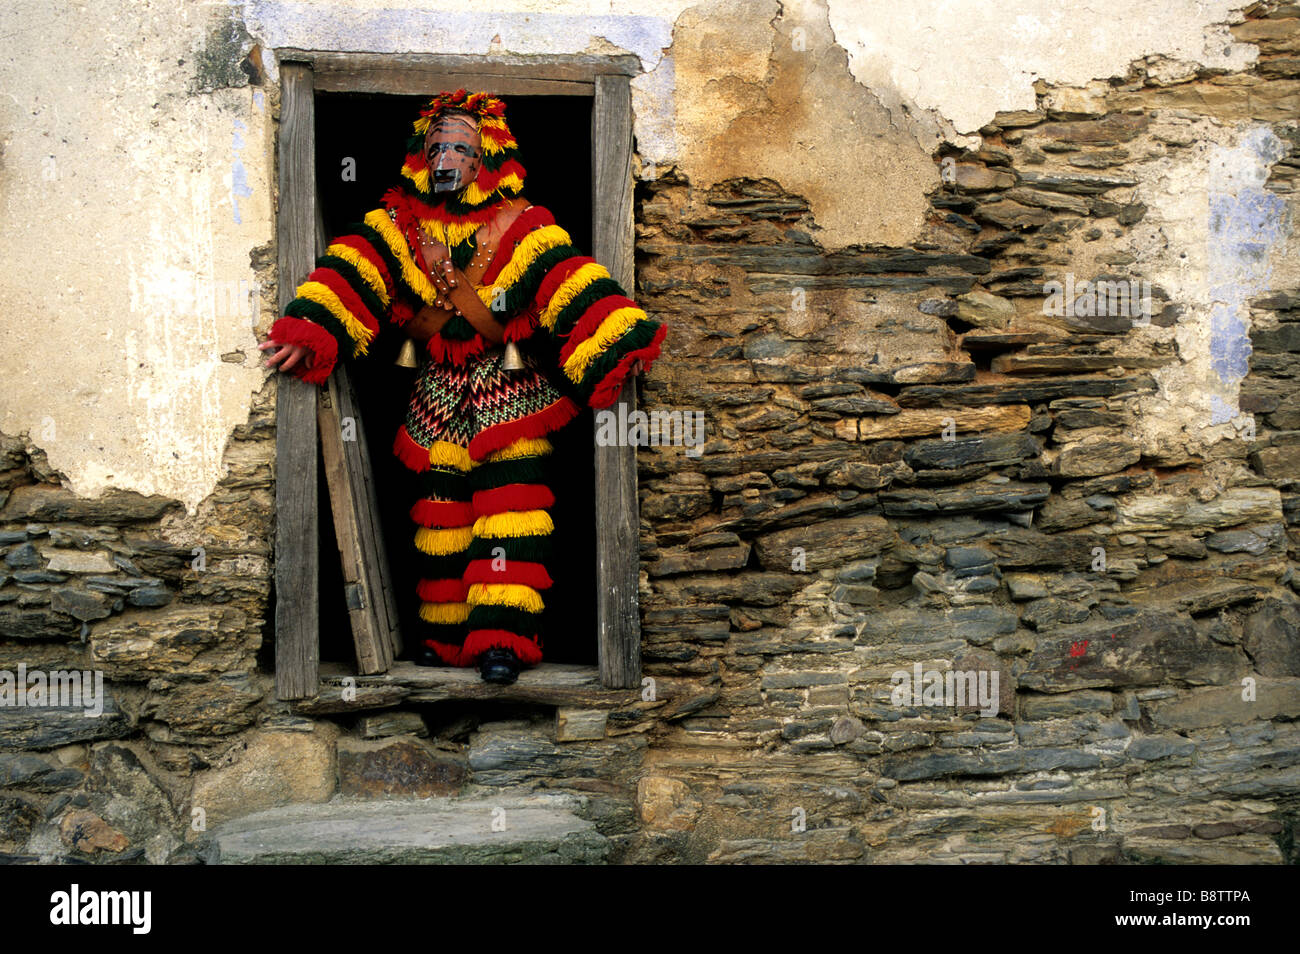 Un uomo vestito con una tradizione 'Caretos' costume incorniciato in una casa colonica porta durante il carnevale di celebrazioni in Podence, Portogallo Foto Stock